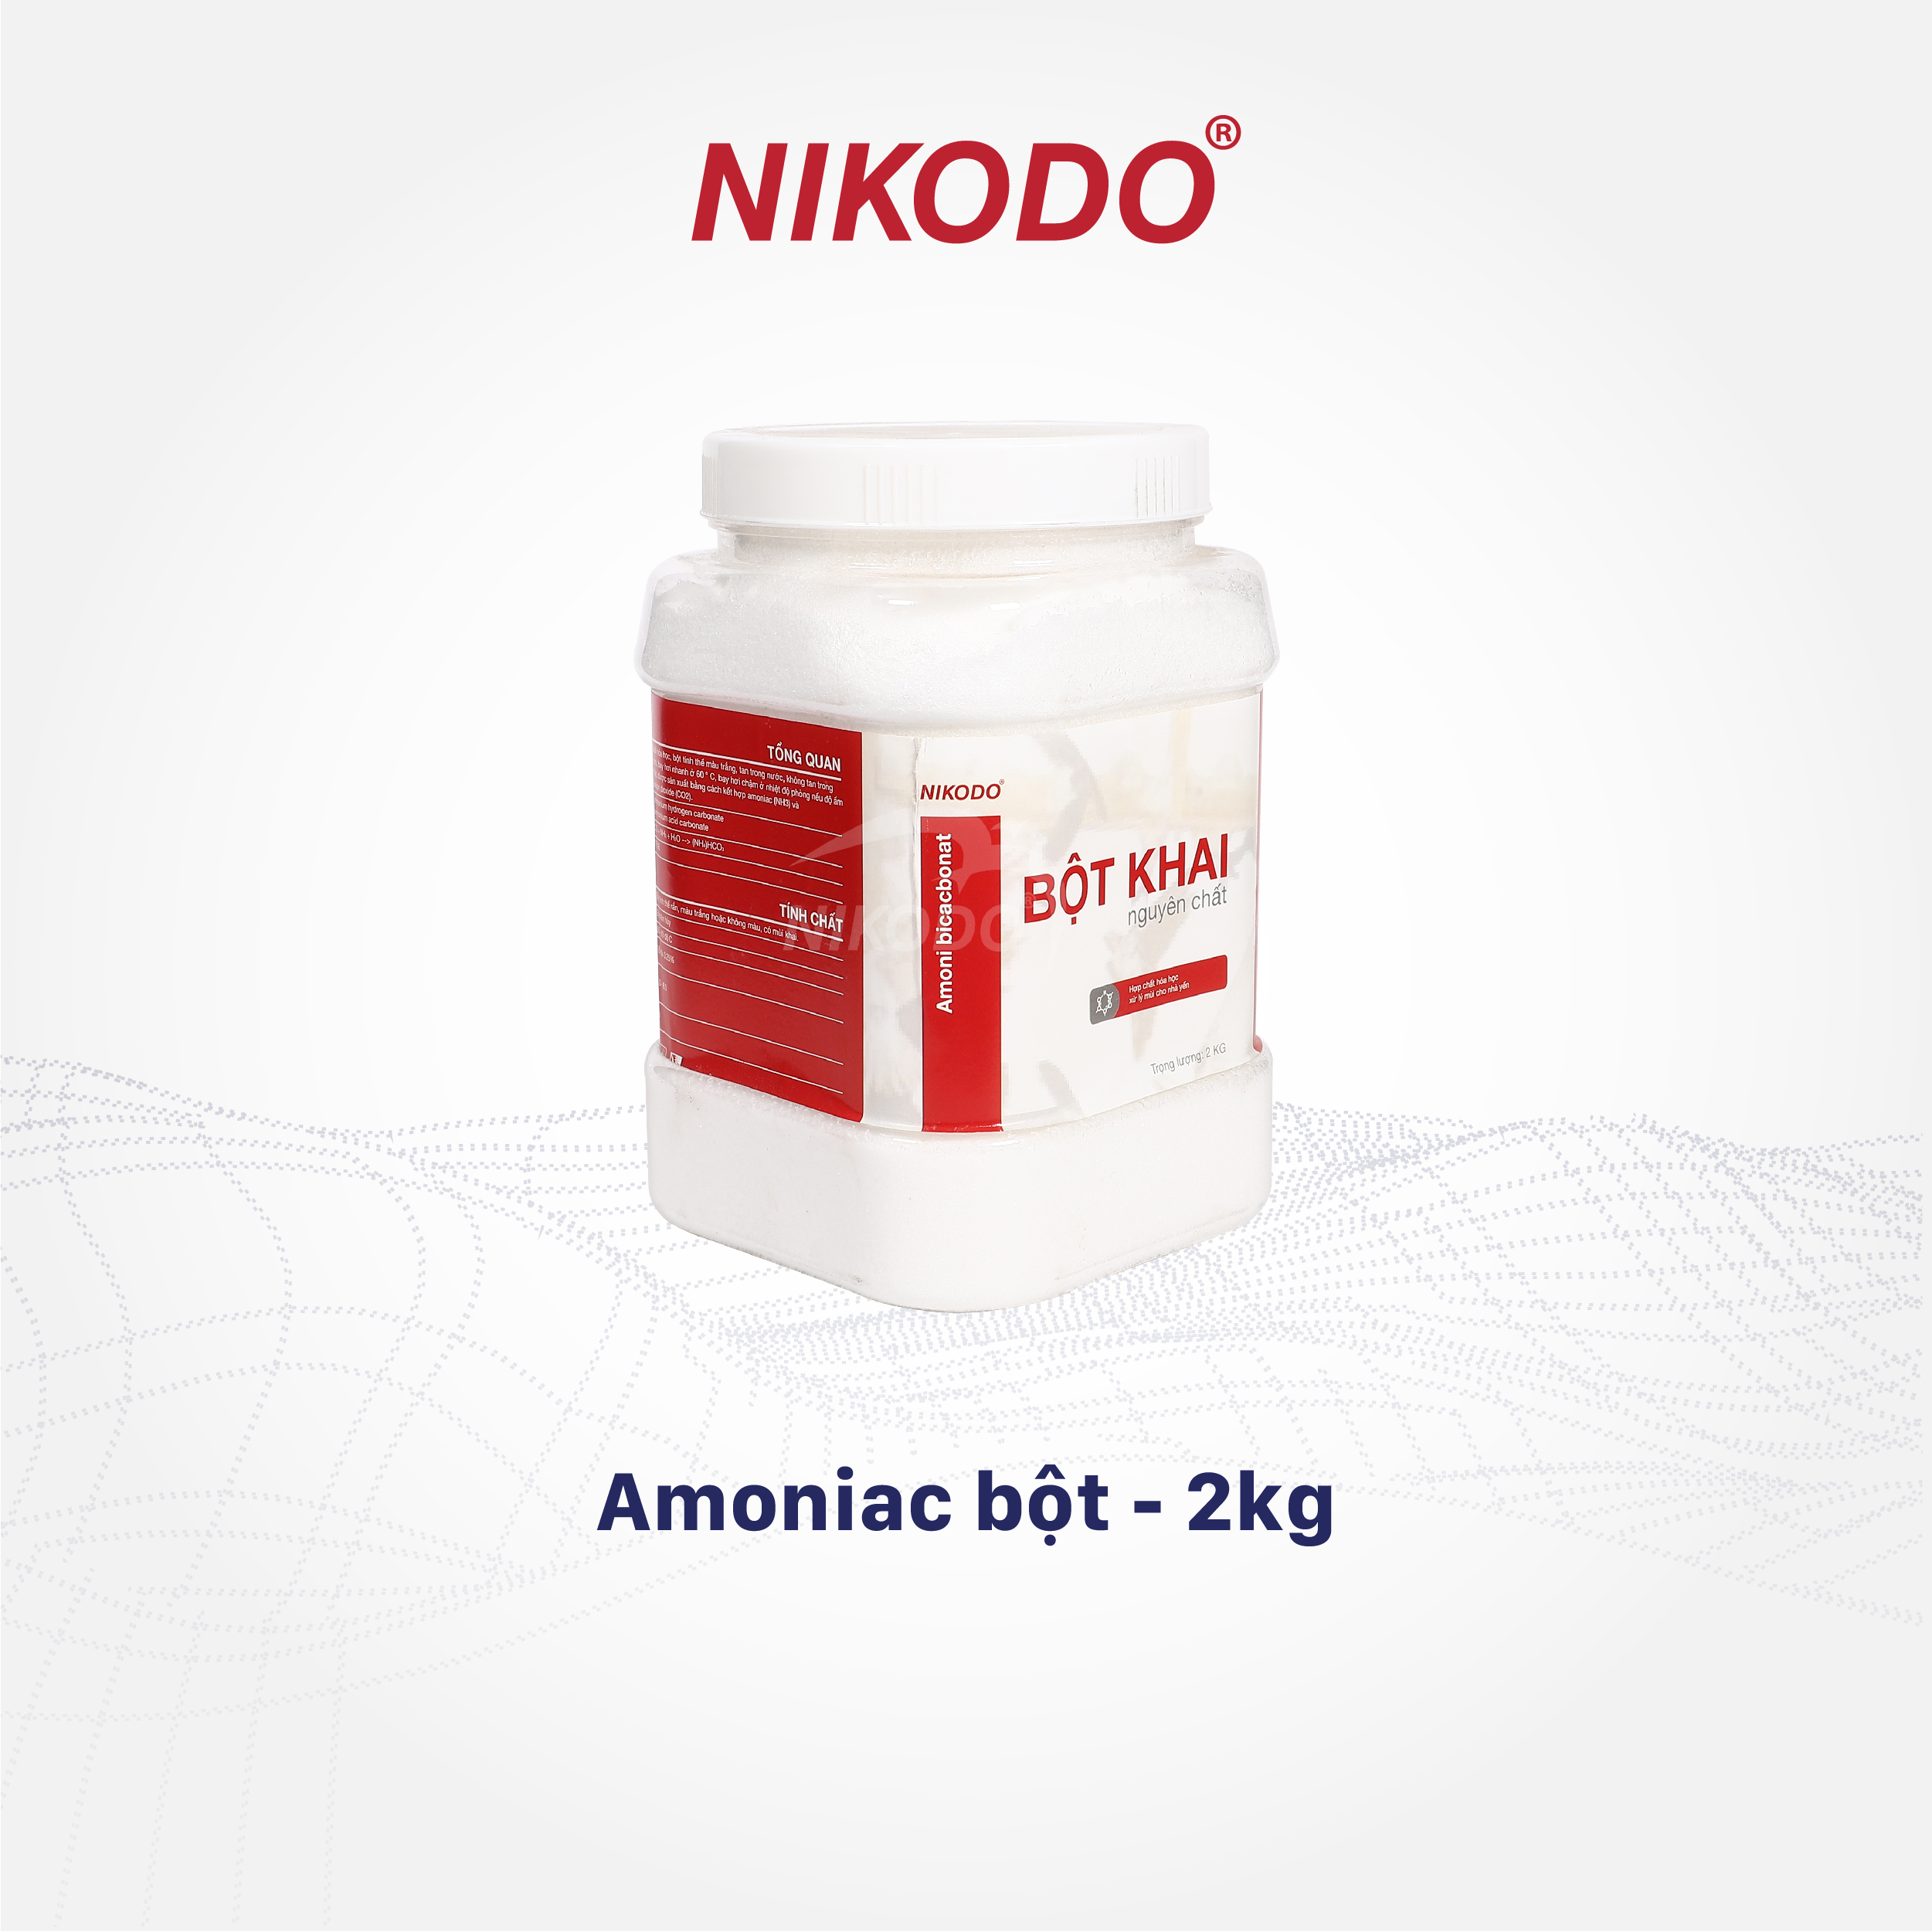 Bột khai tạo mùi nhà yến amoniac, dạng bột, 2kg, thu hút chim yến - Nikodo